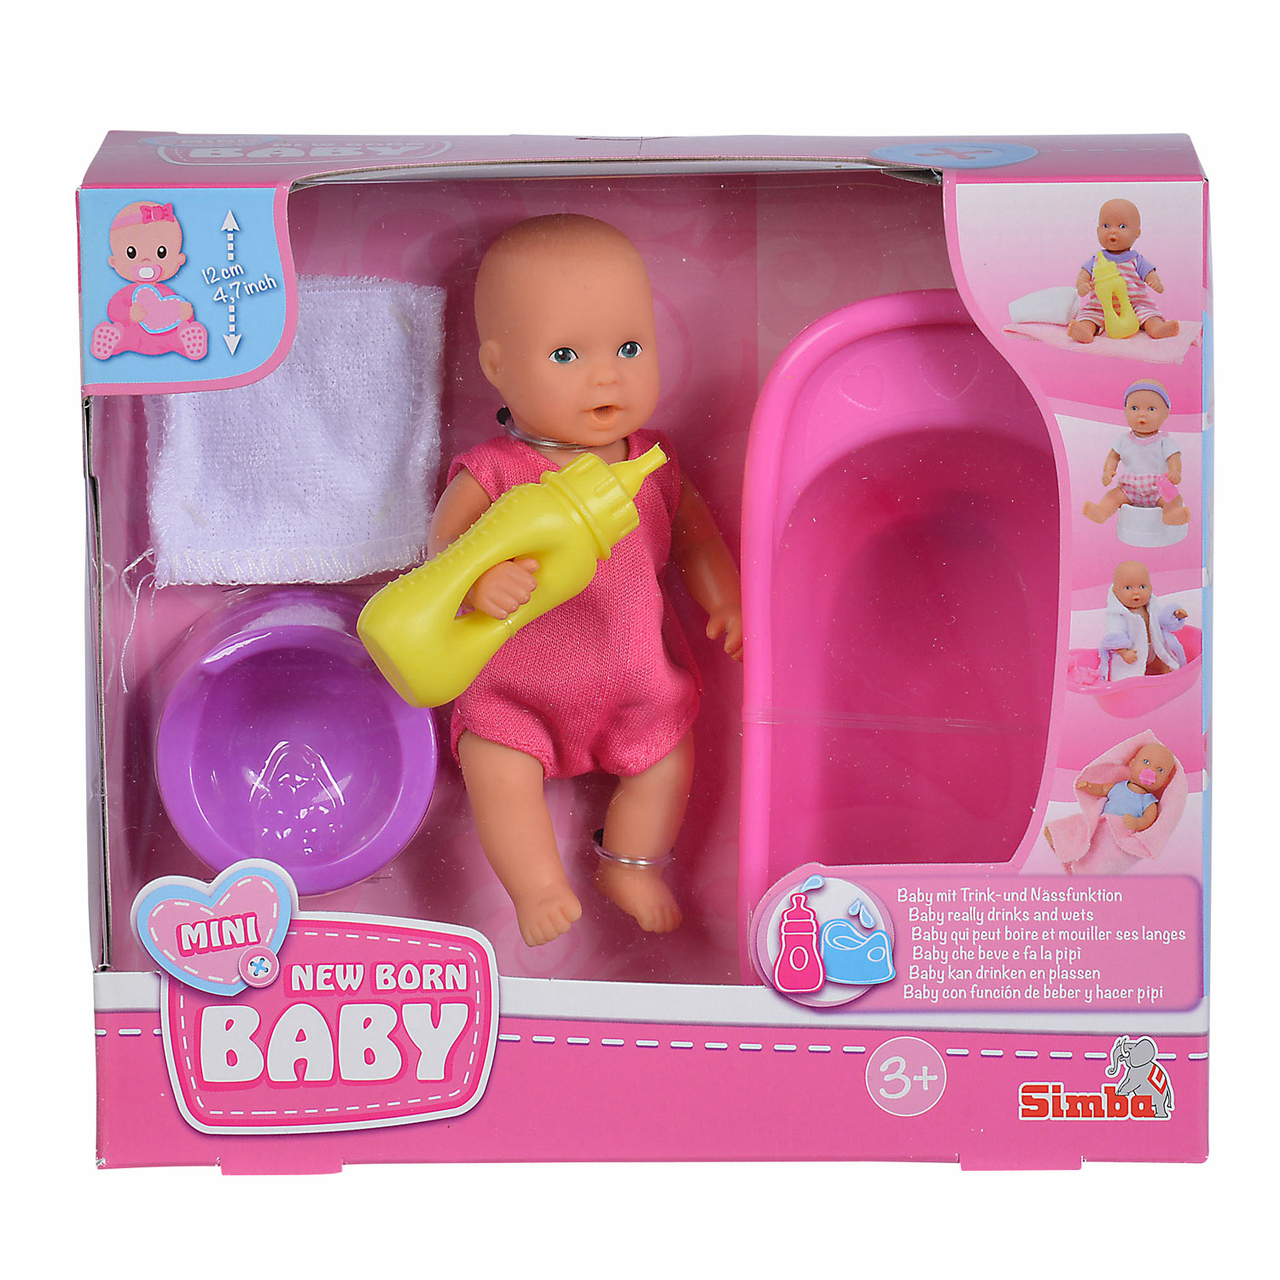 New Born Baby in Bad Set - Het Speelgoedpaleis